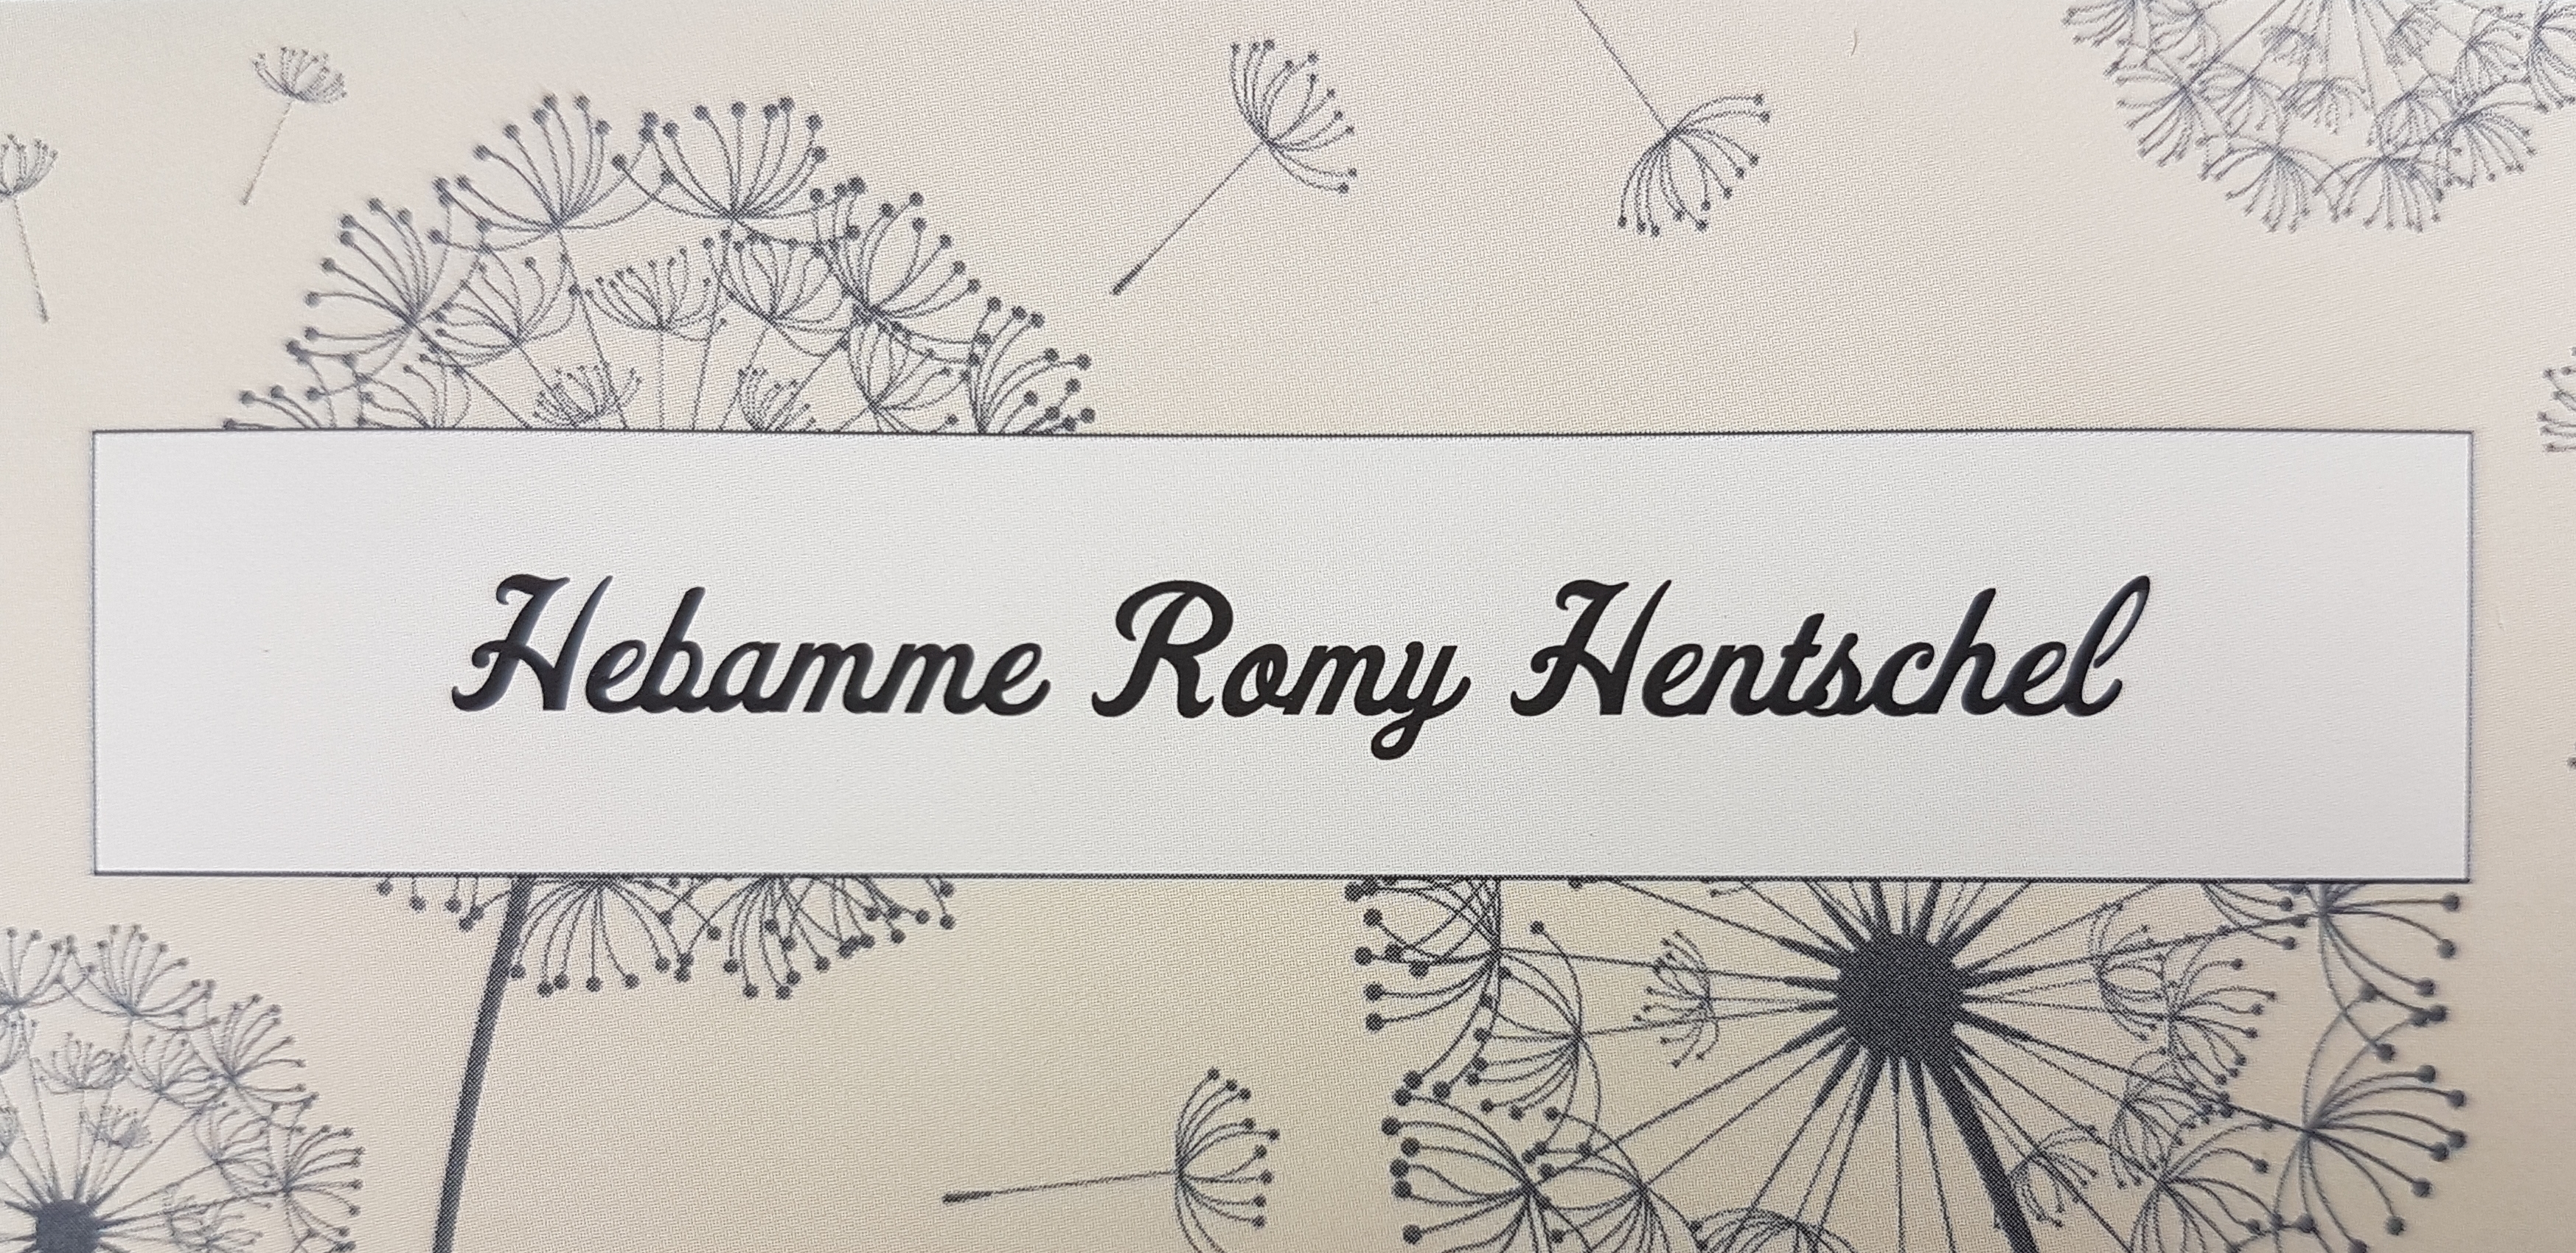 Logo von Hebamme Romy Hentschel